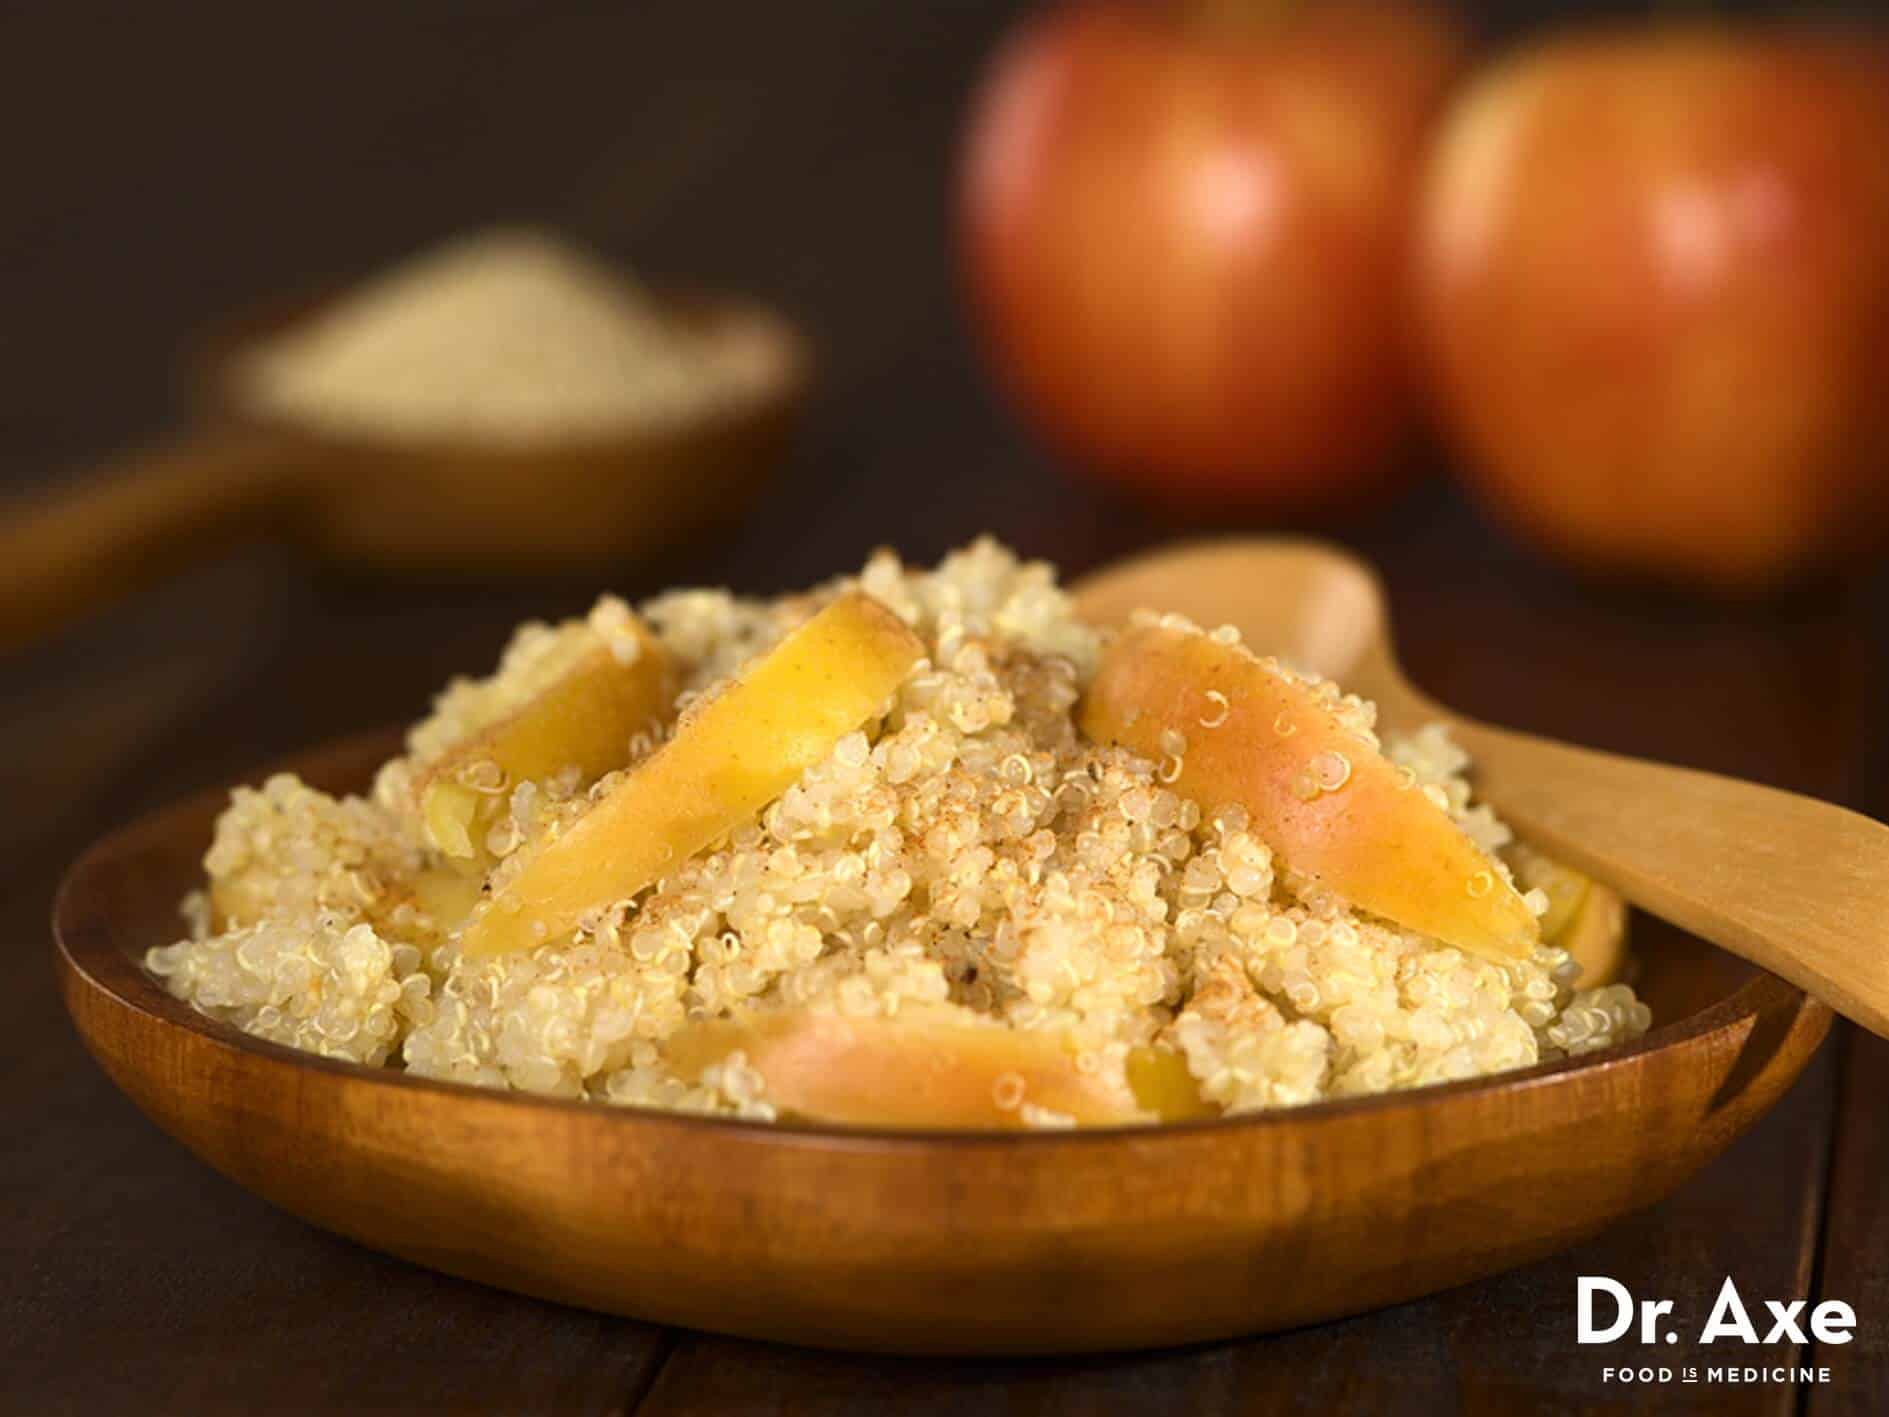 Baked apple quinoa recipe - Dr. Axe